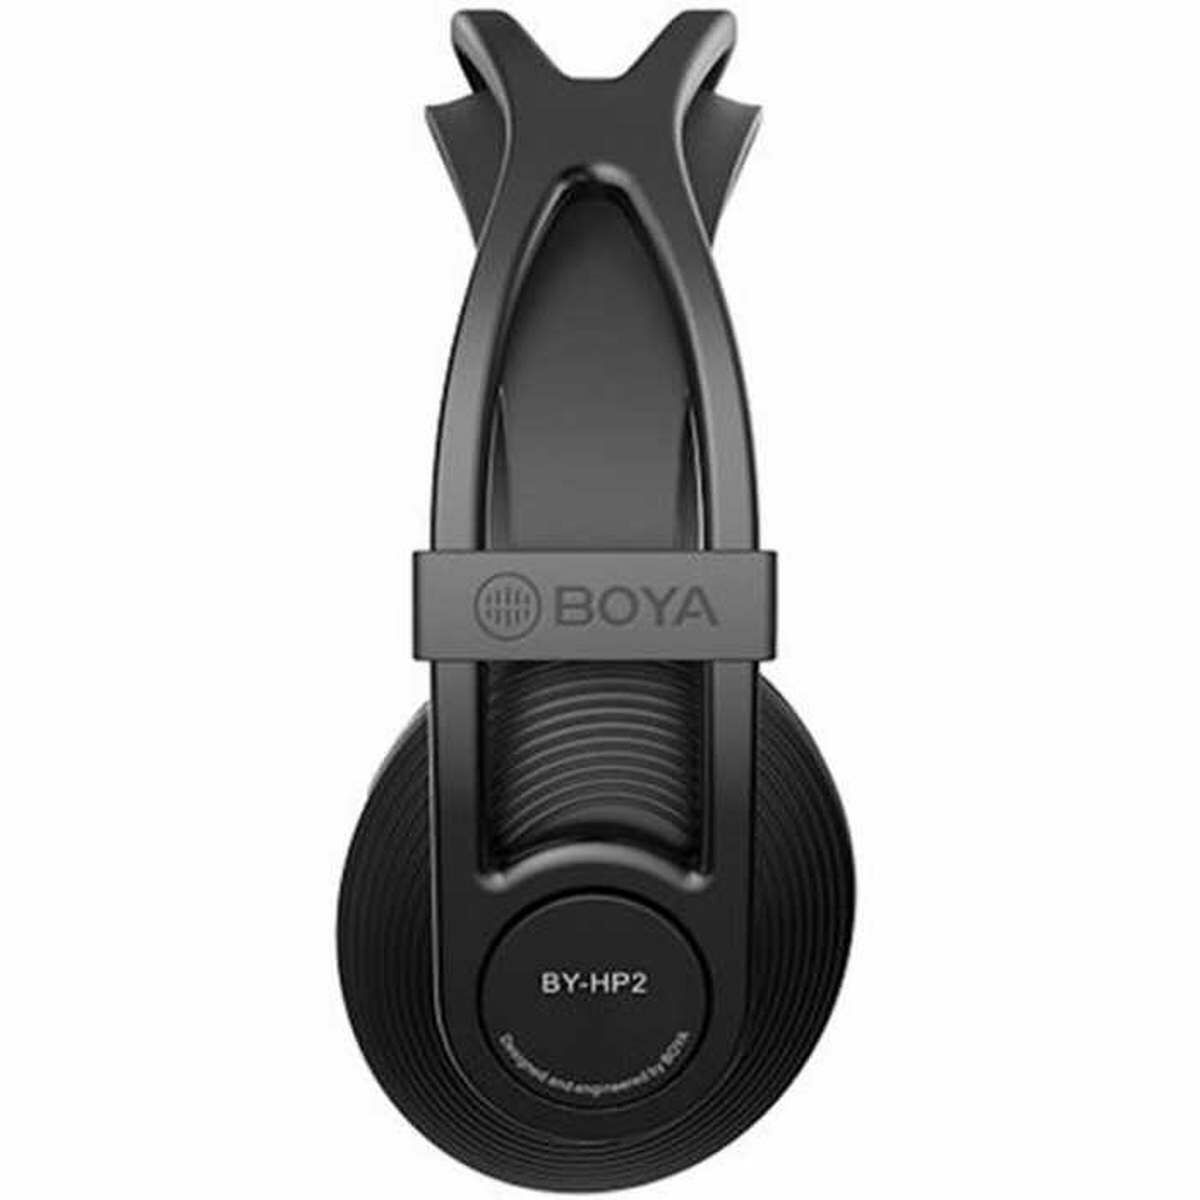 Kép 2/3 - BOYA vezetékes fejhallgató 3.5 mm Jack csatlakozóval, 6.35 mm adapterrel, fekete EU